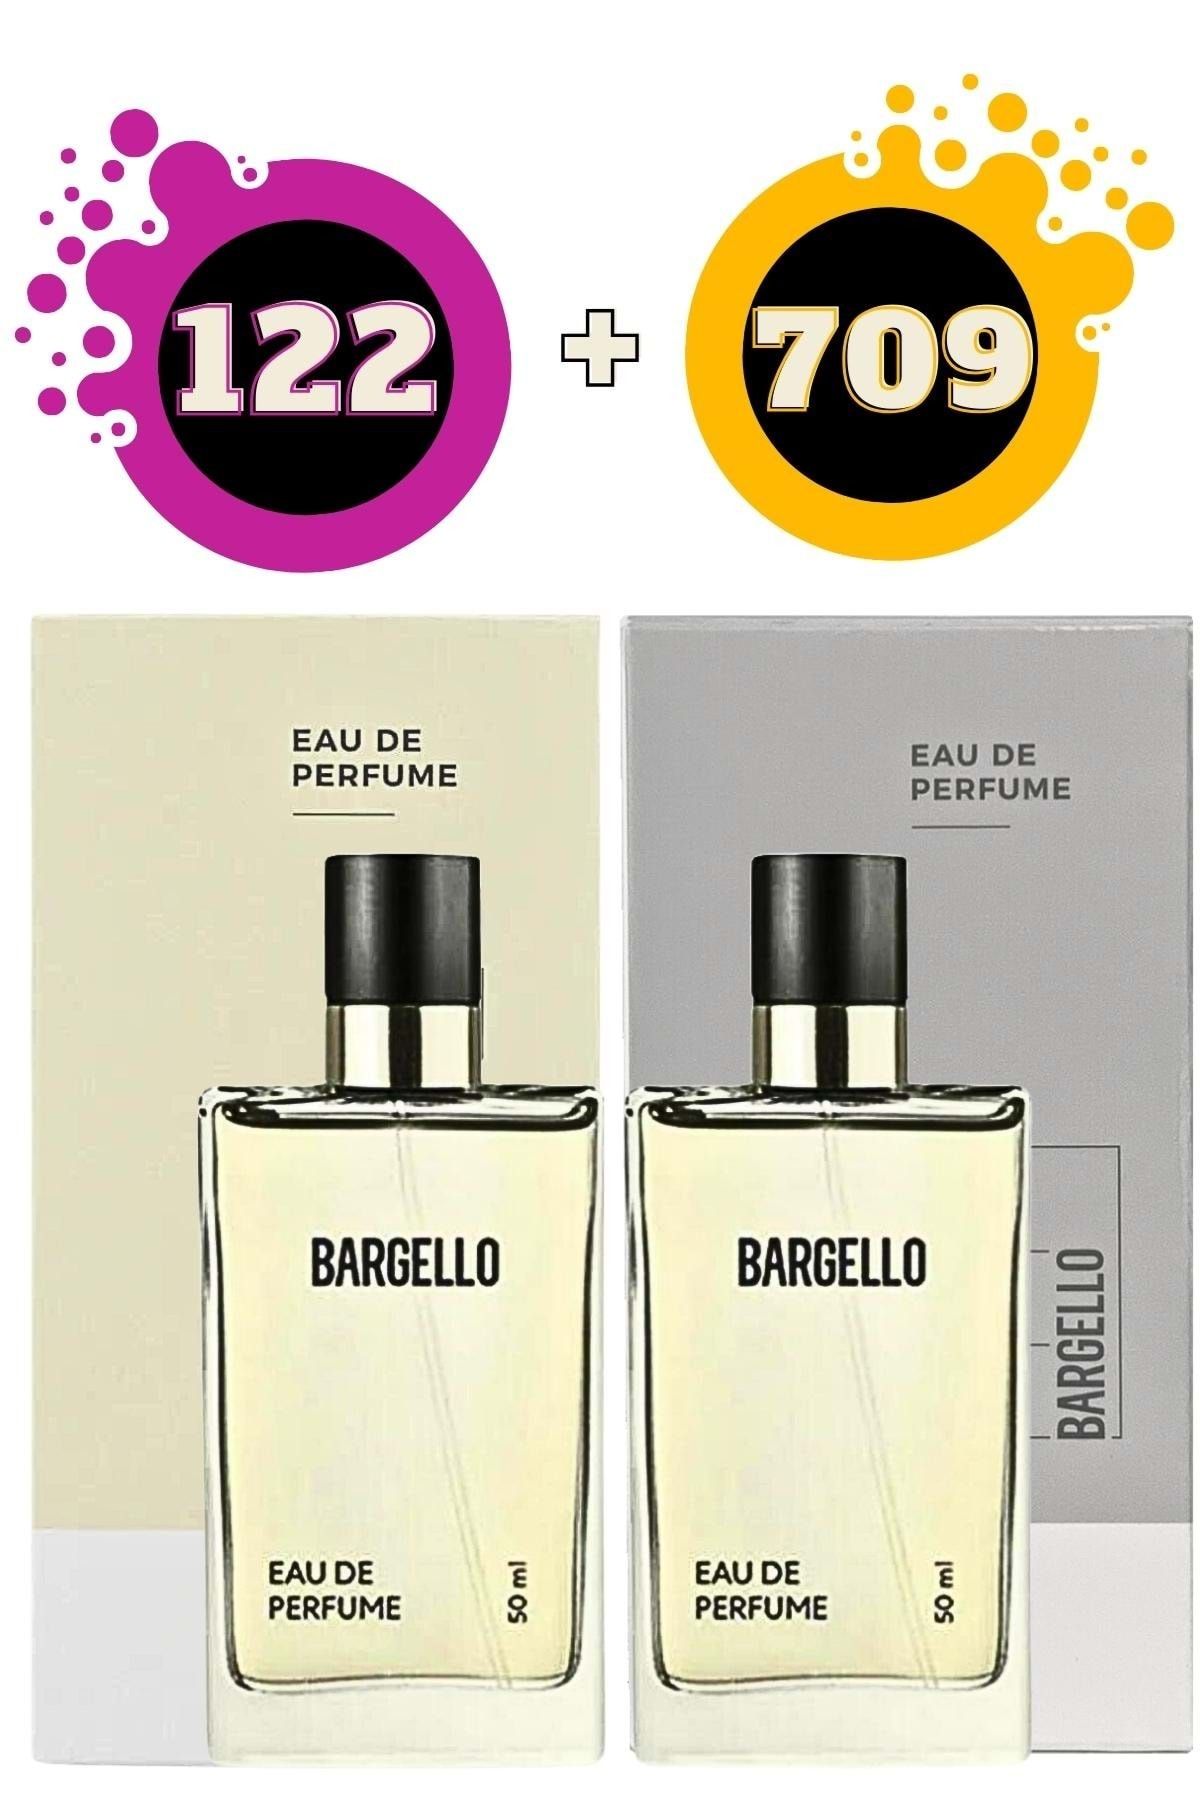 Bargello 122 Oriental Kadın Parfüm 709 Oriental Erkek Parfüm Seti